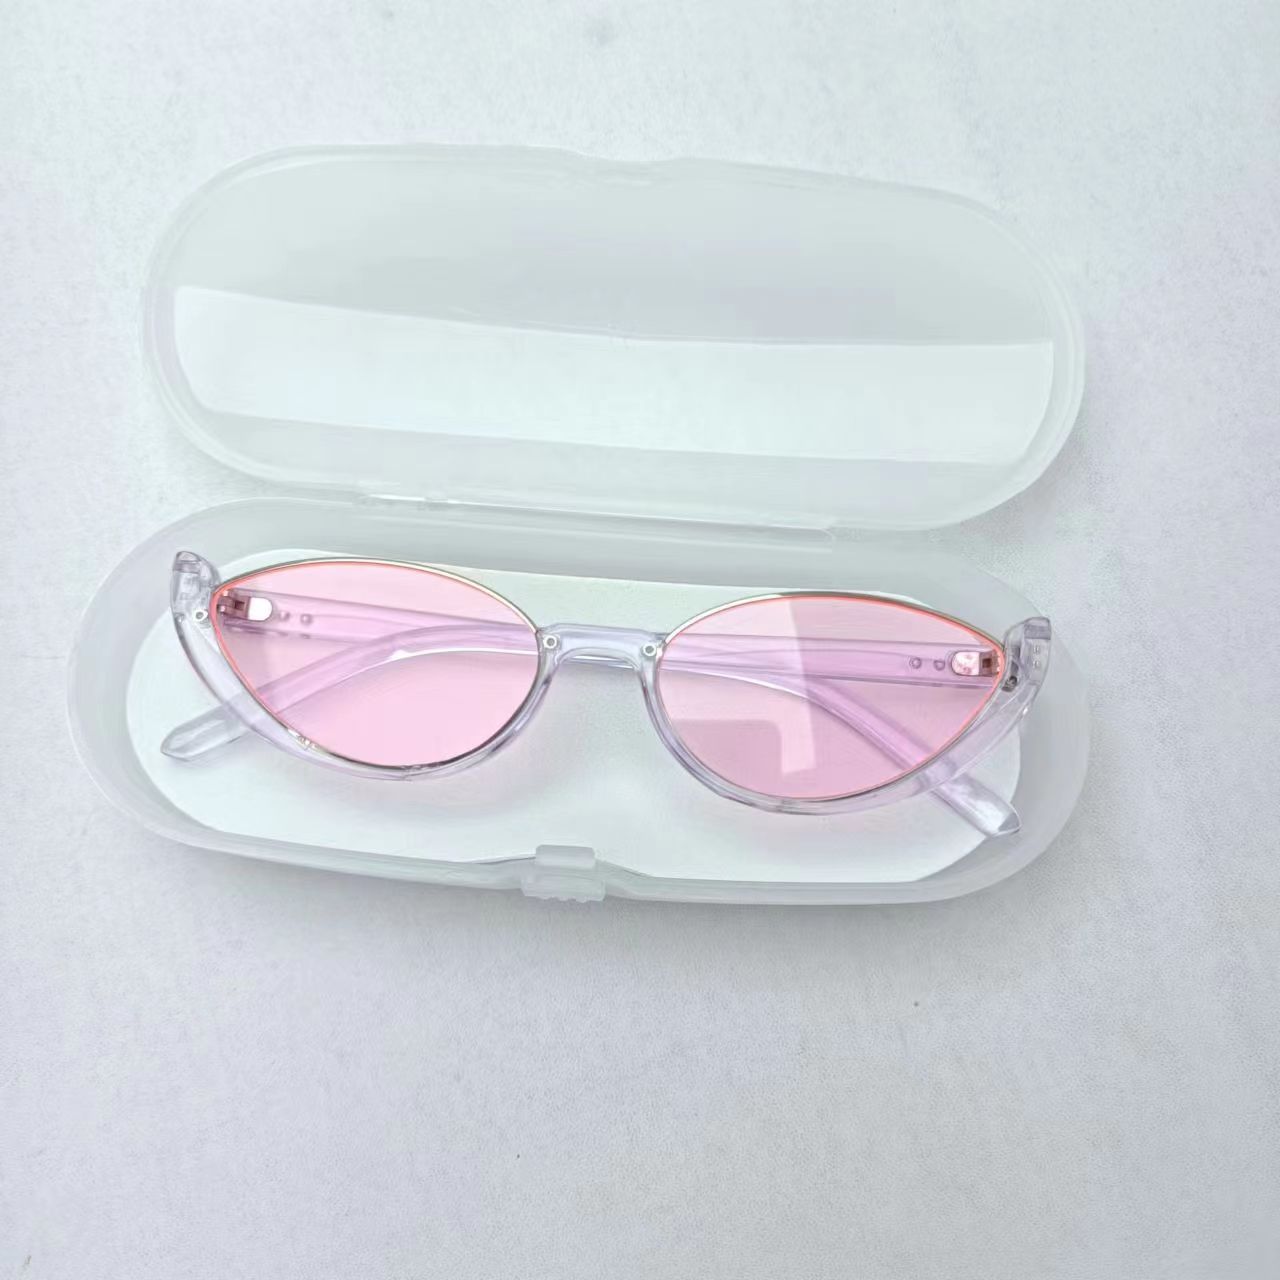 Plastic glasses case